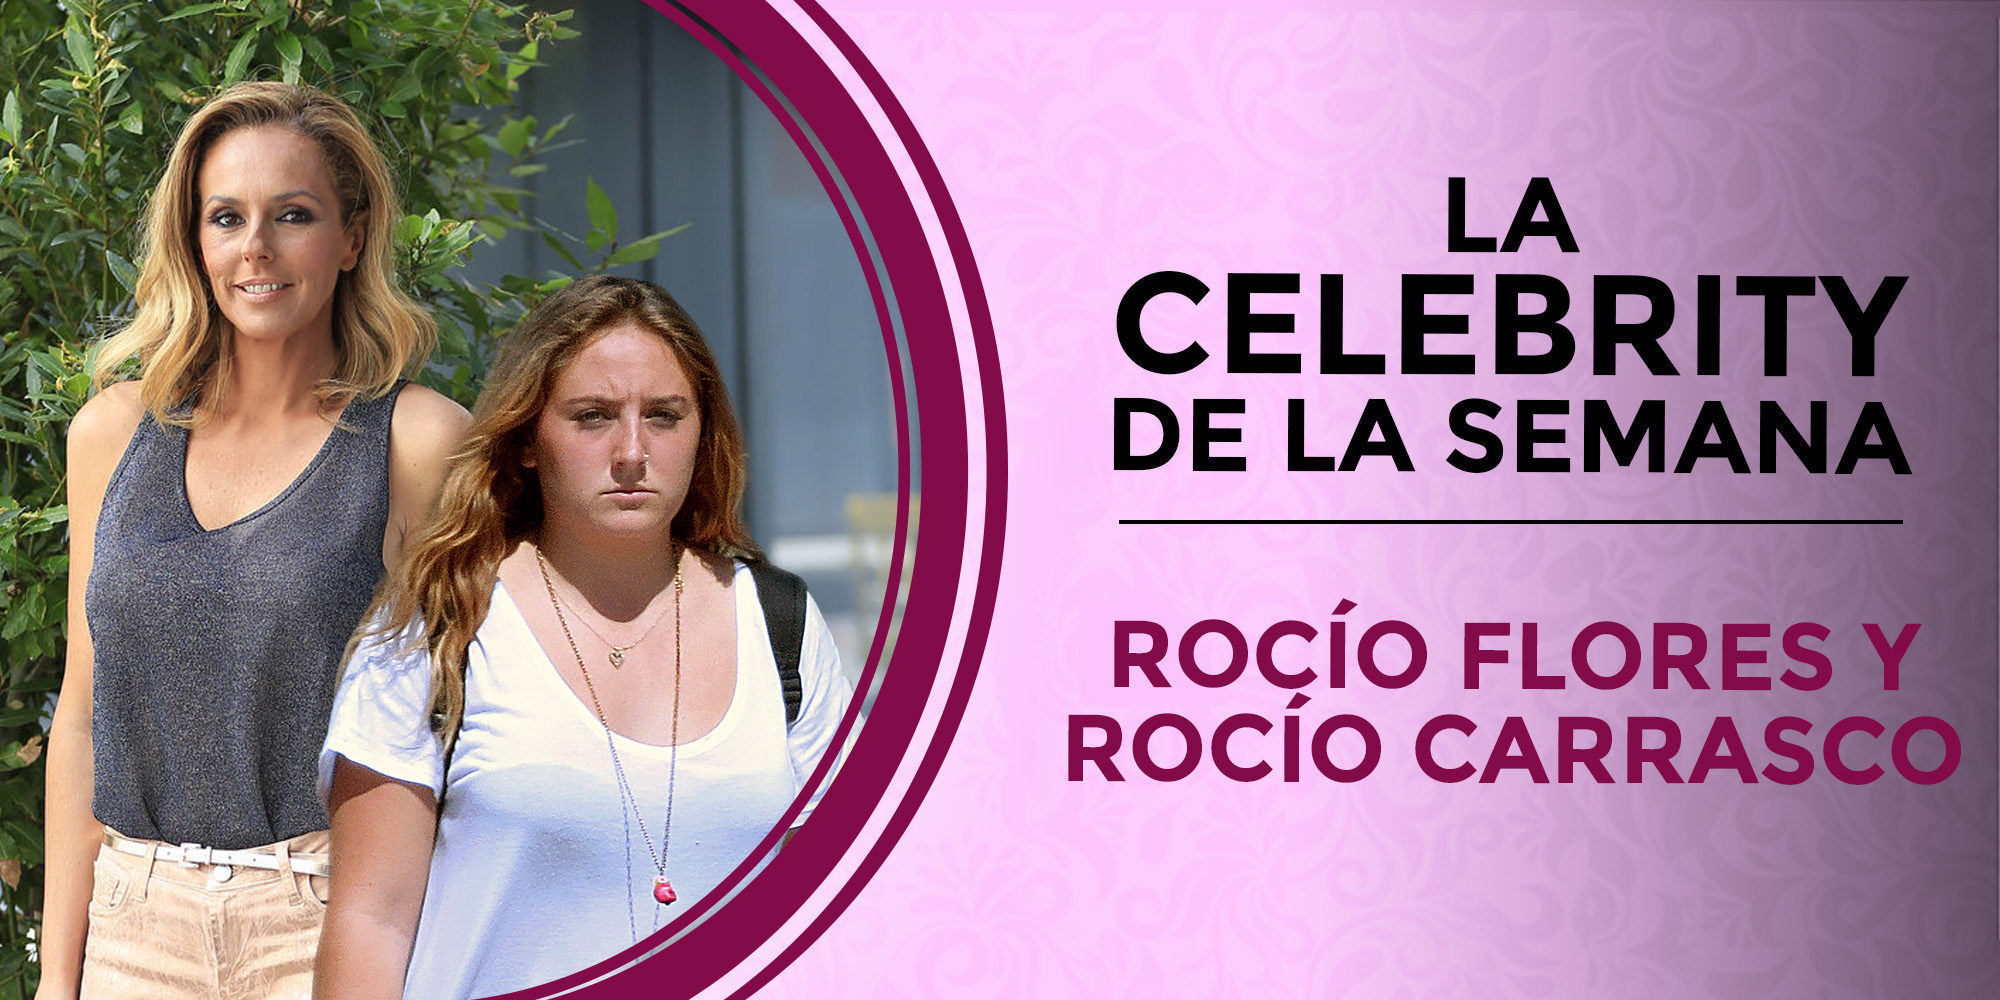 Rocío Carrasco y Rocío Flores se convierten en las celebrities de la semana por sus desavenencias